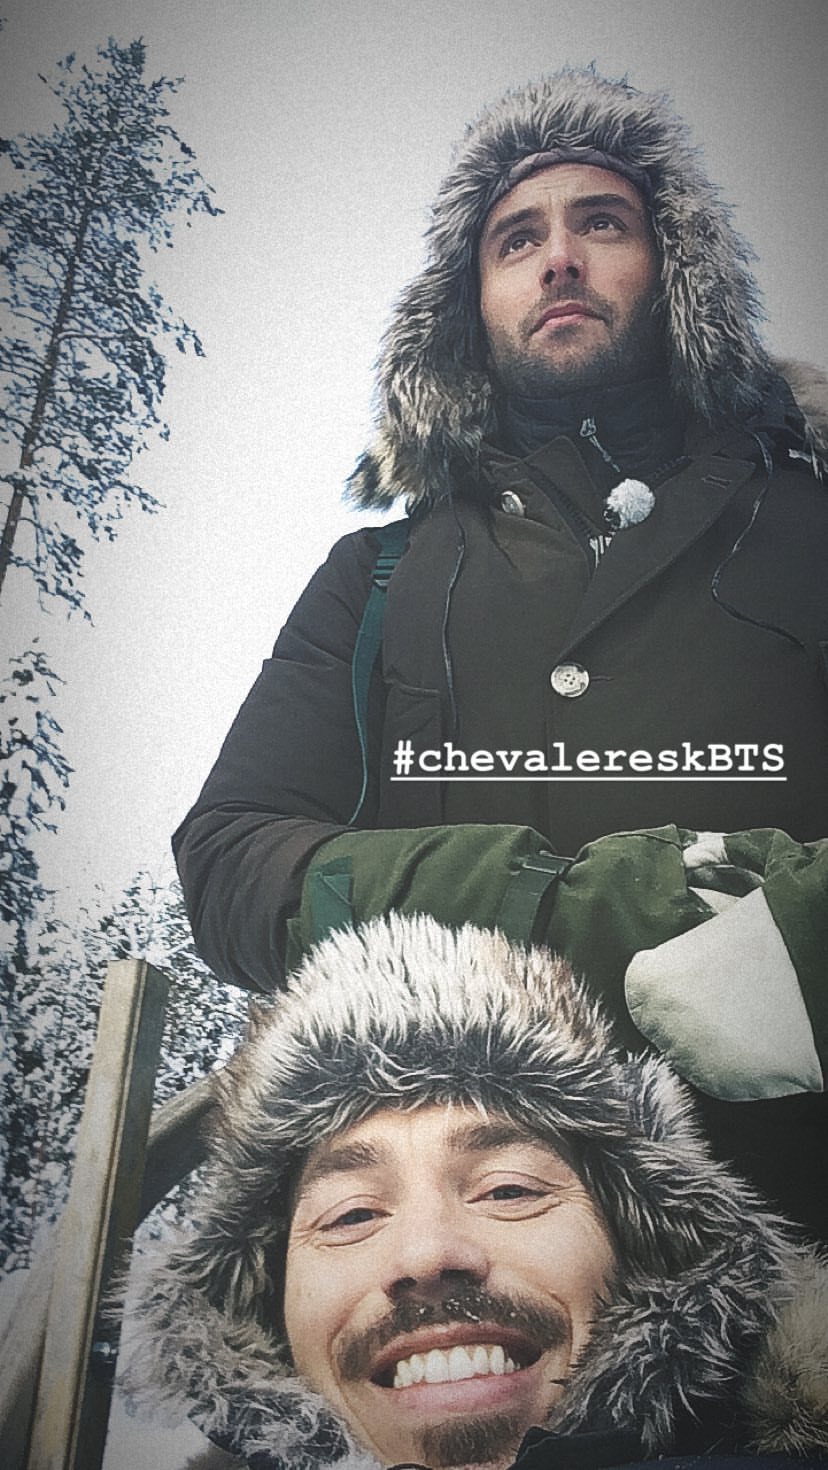 Chevaleresk season 2 on set – here we go again !